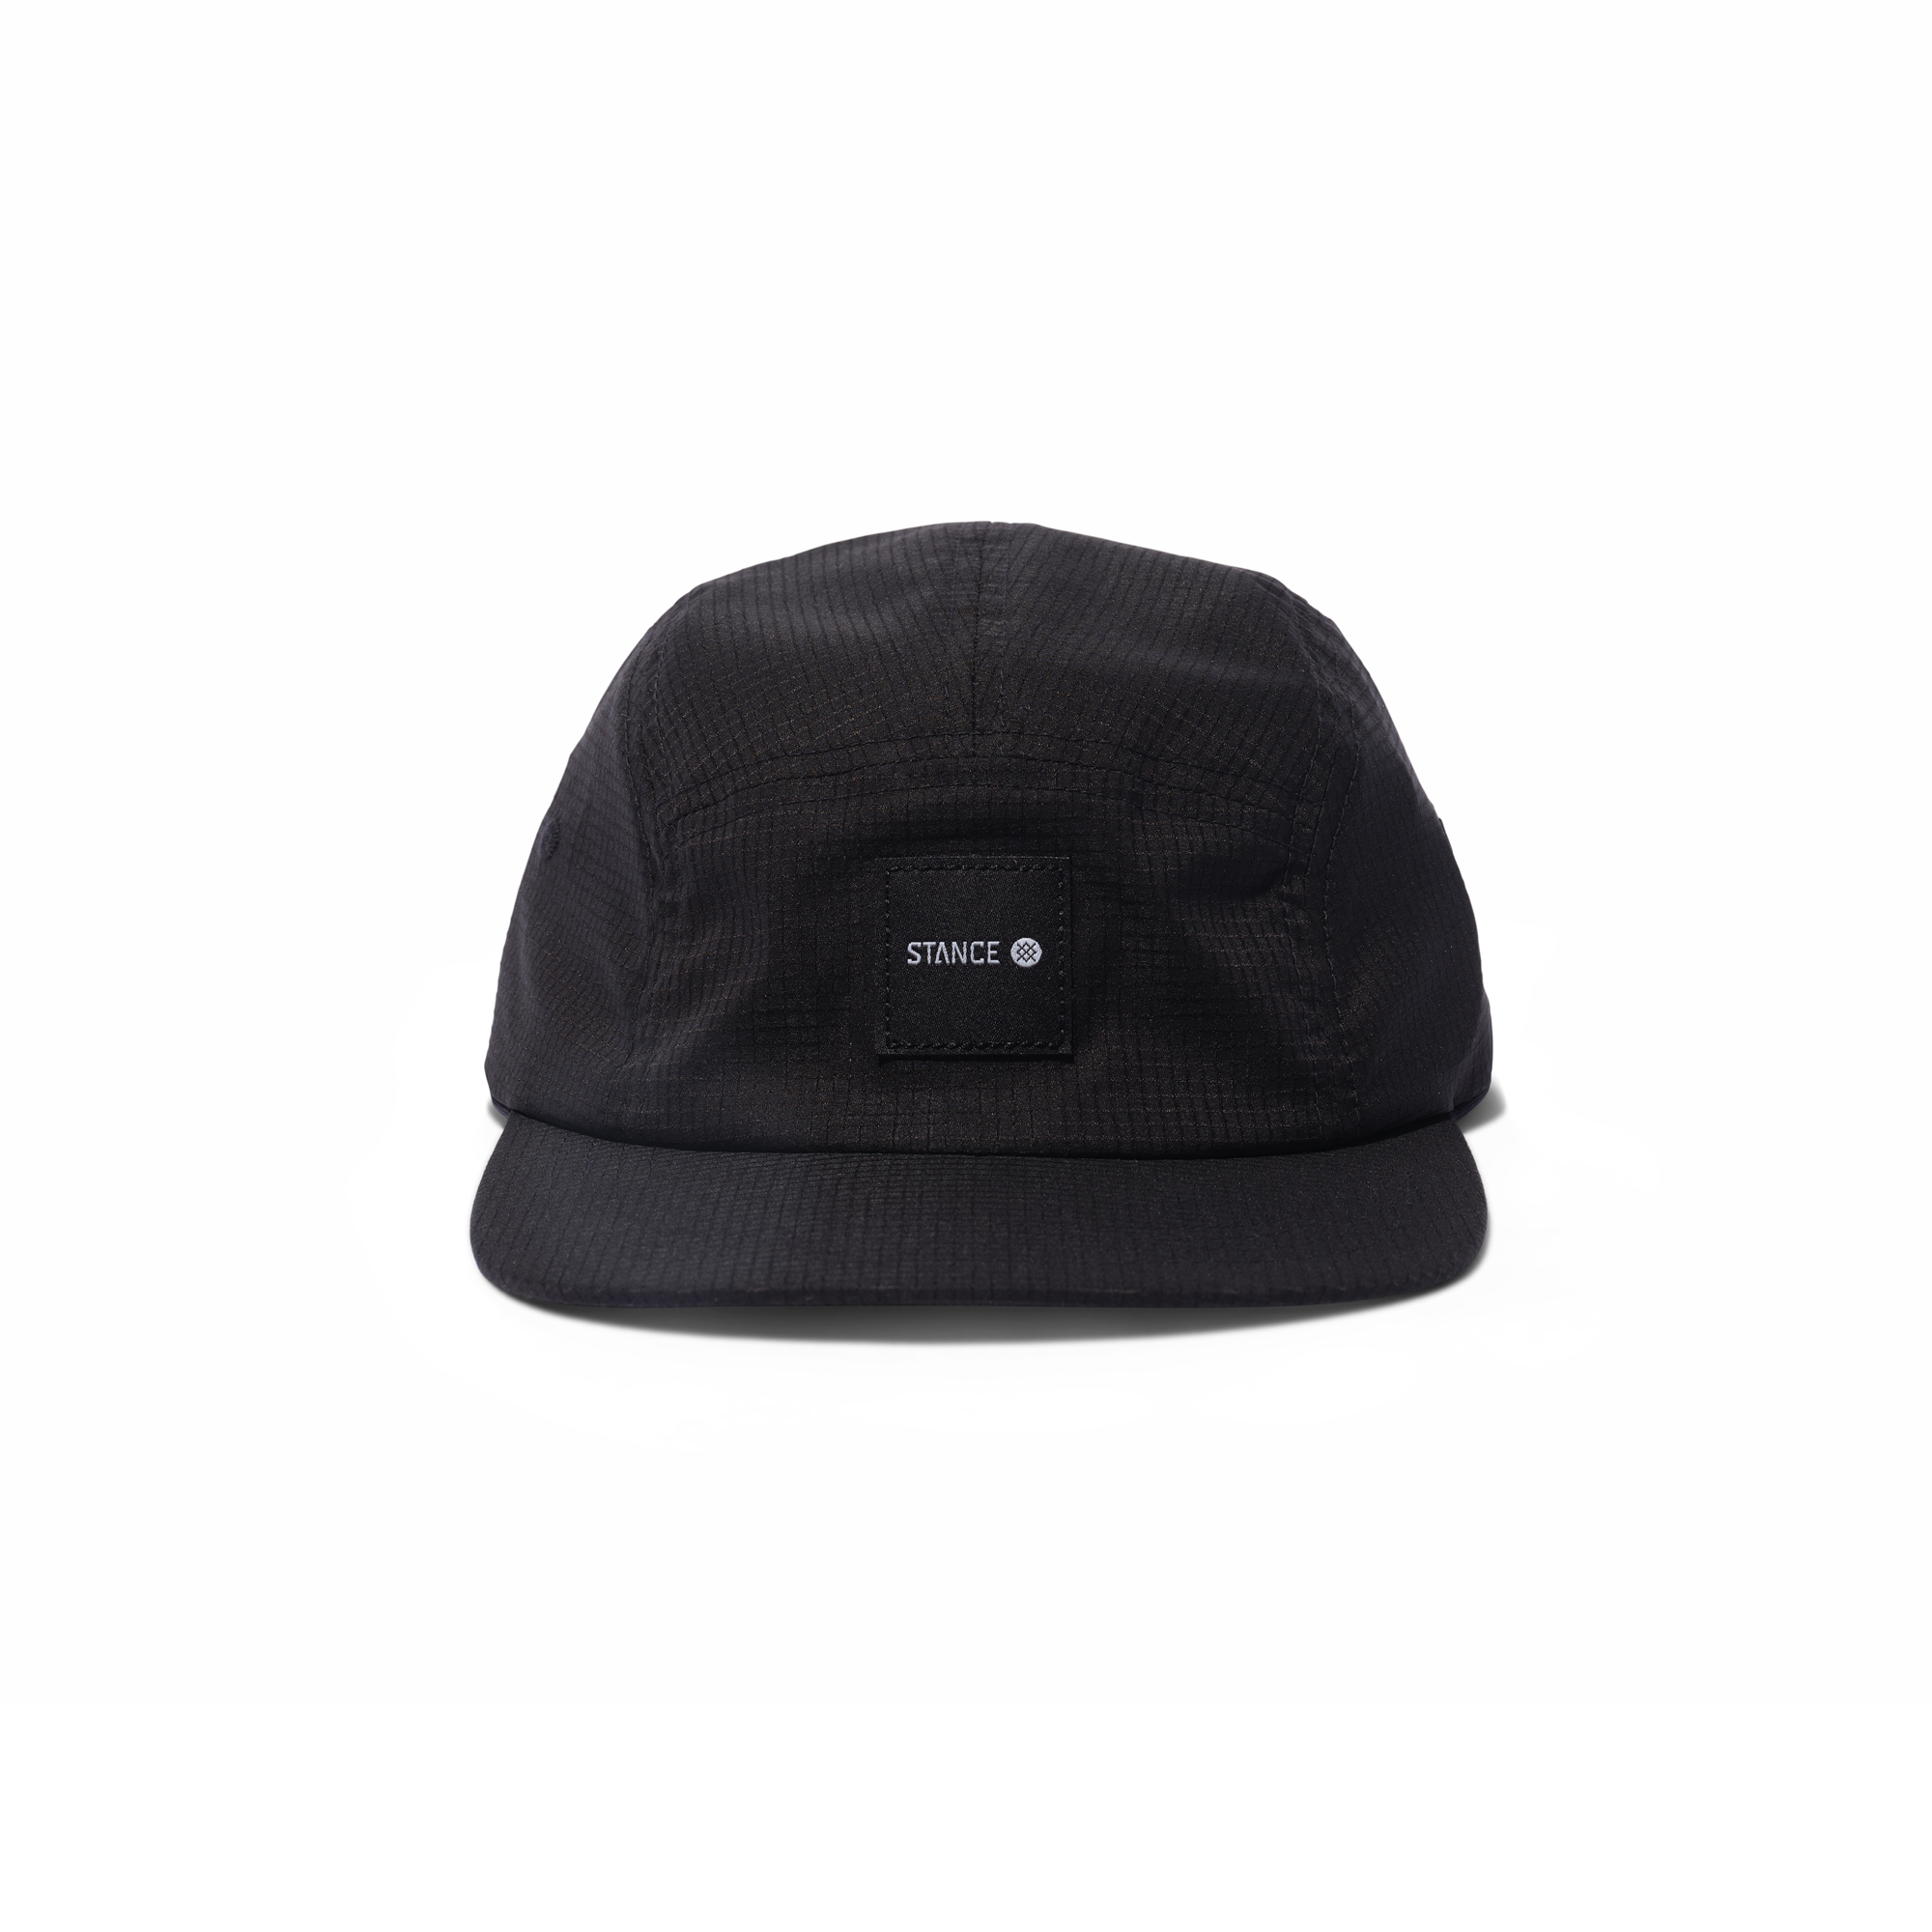 Stance Complex Packable Hat - Black